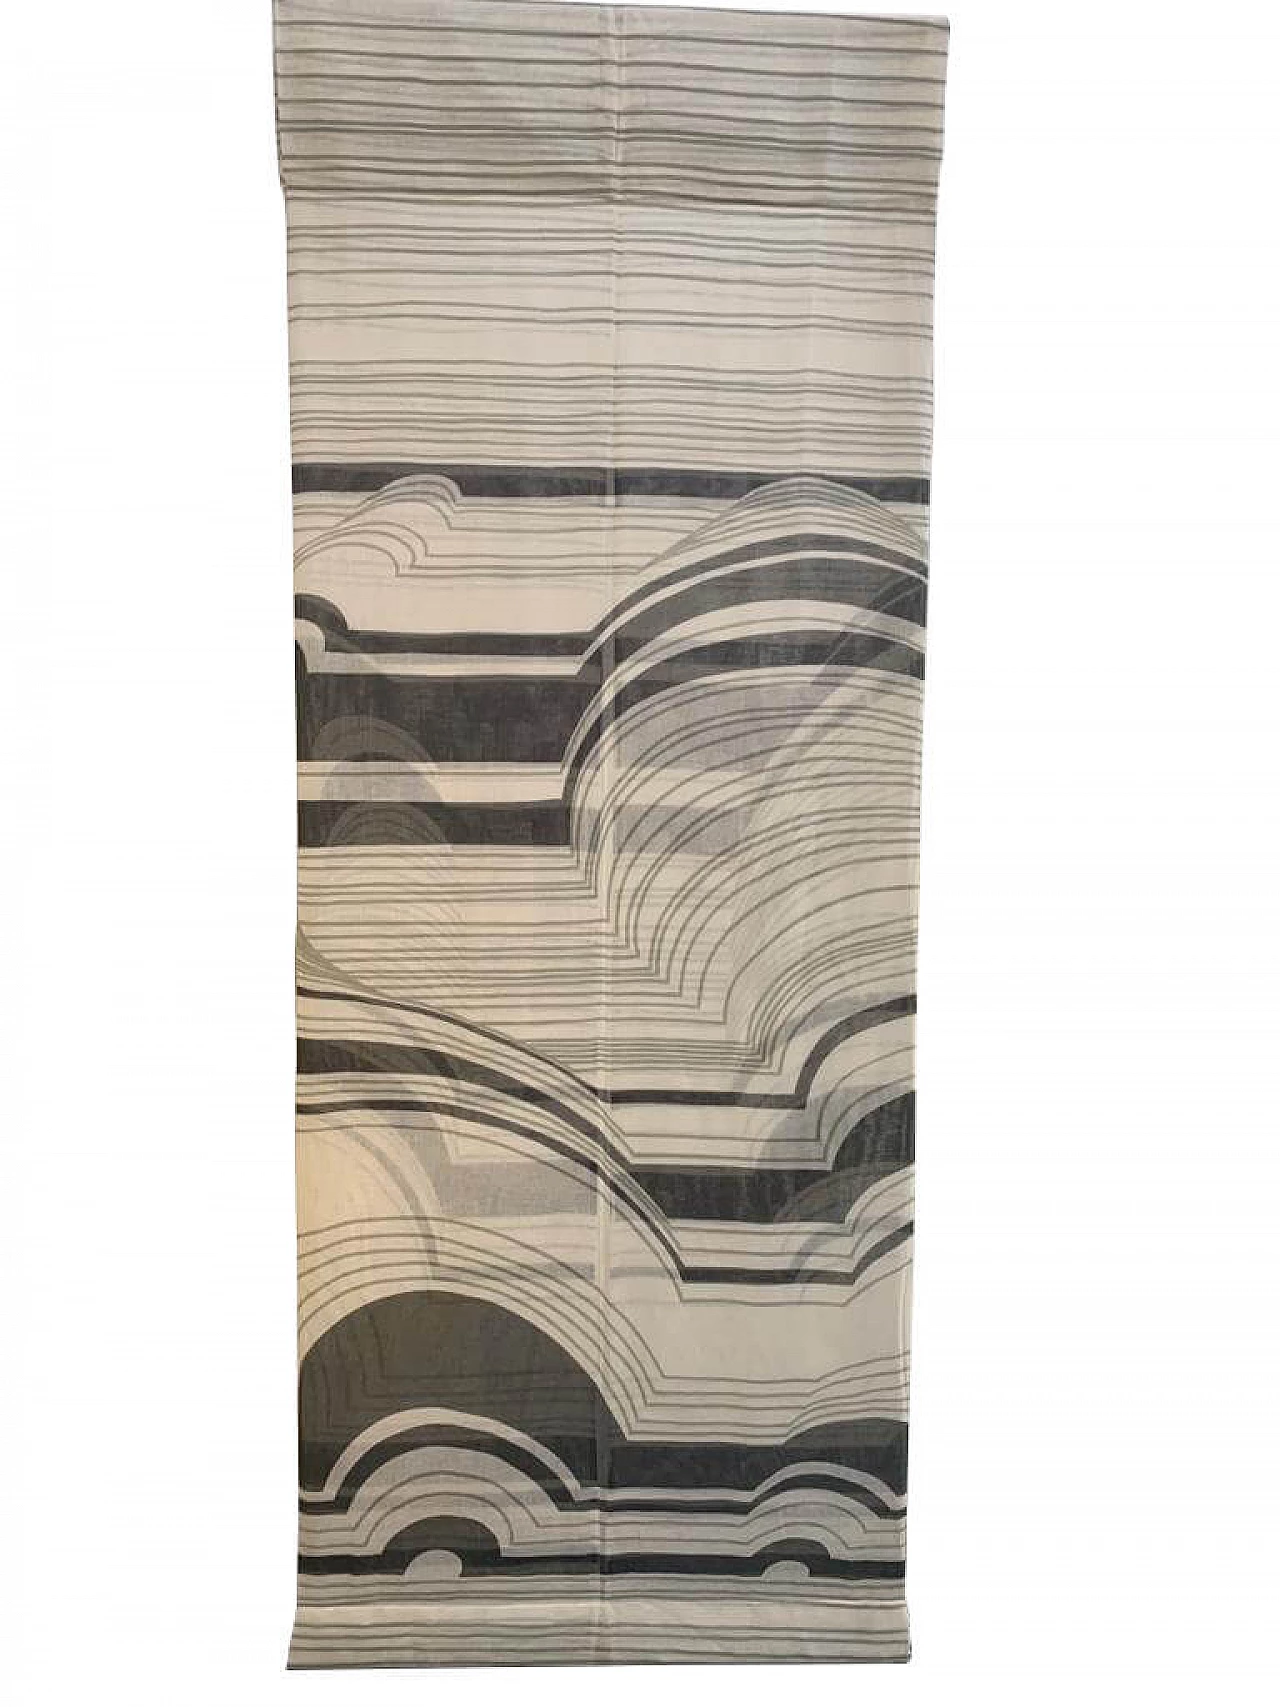 Fabric divider by Silvio Coppola for Tessitura di Mompiano, 1970s 1139560